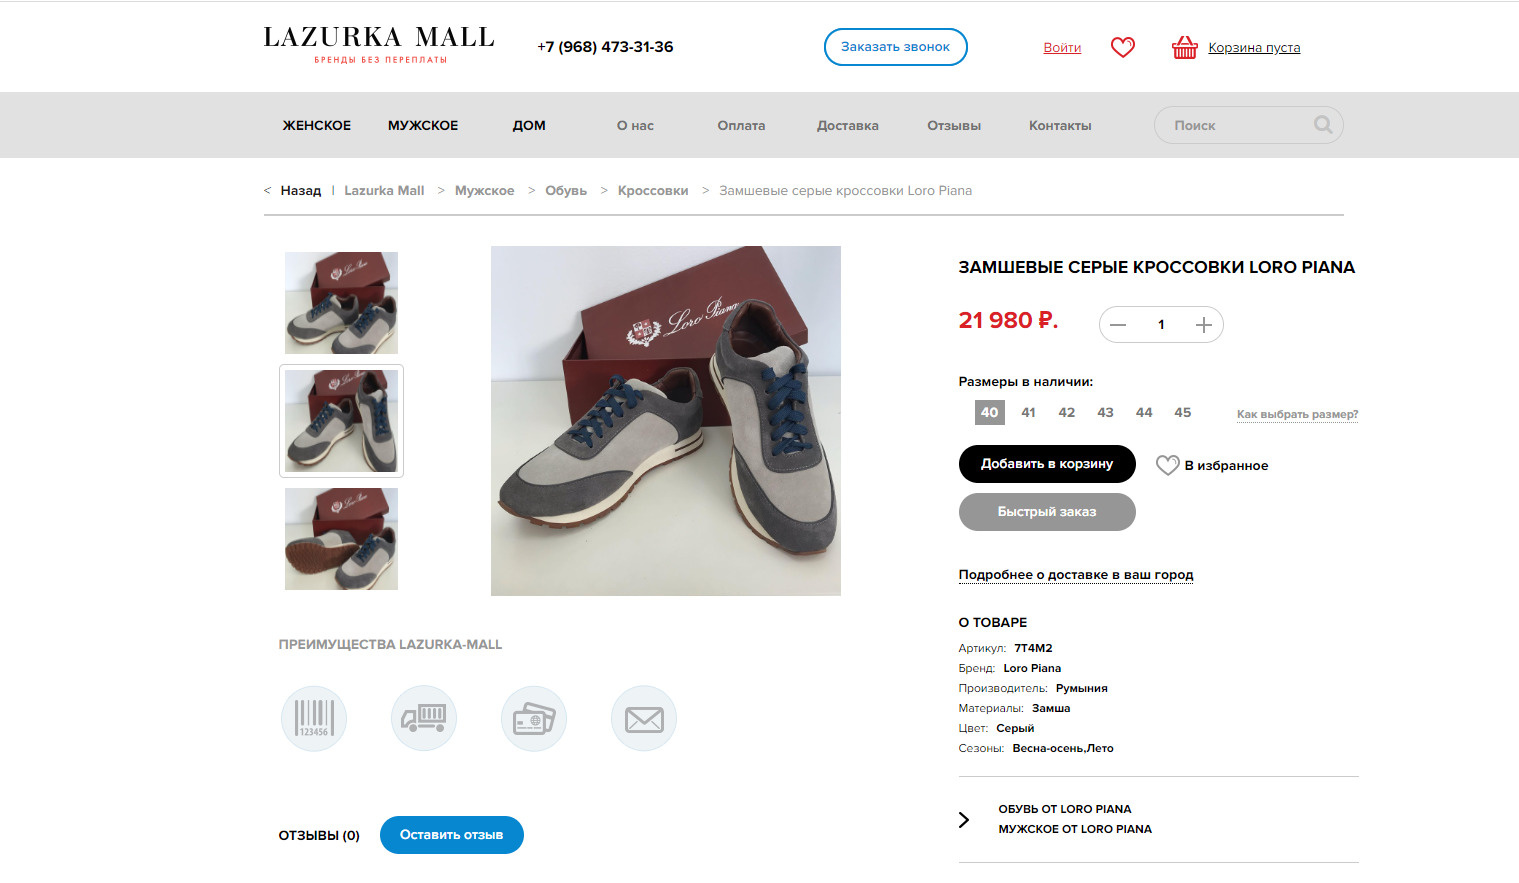 Интернет-магазин брендовых вещей Lazurka Mall продает обувь от Loro Piana за 22 тысячи рублей